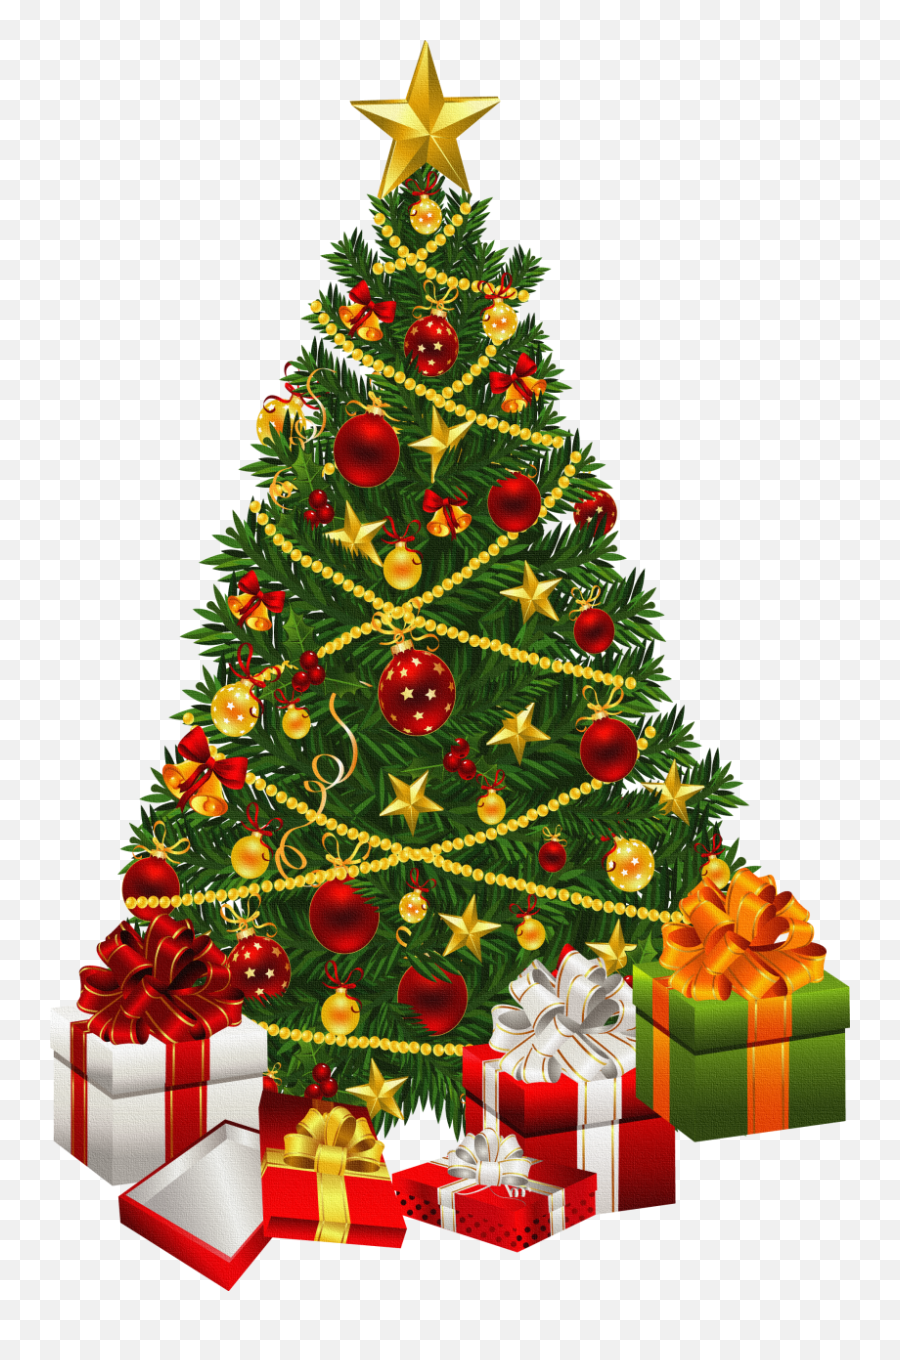 Download Christmas Tree Clipart - Christmas Tree Hd Png,Christmas Tree ...